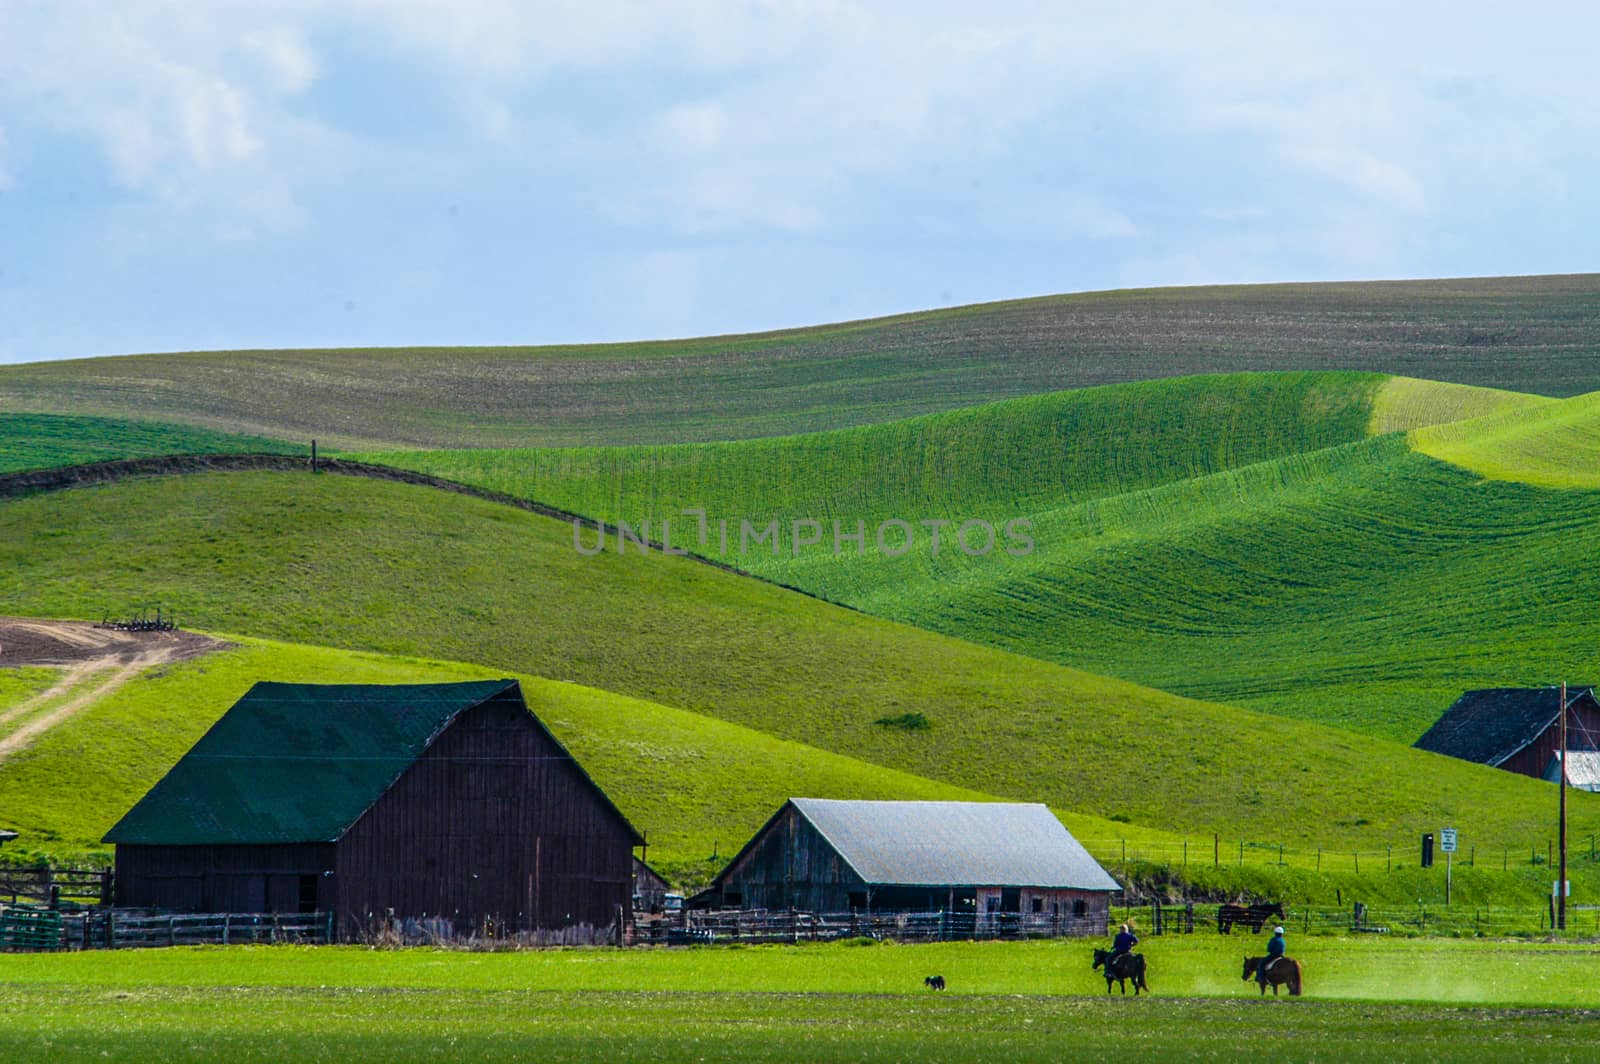 Central Washington farm scene.